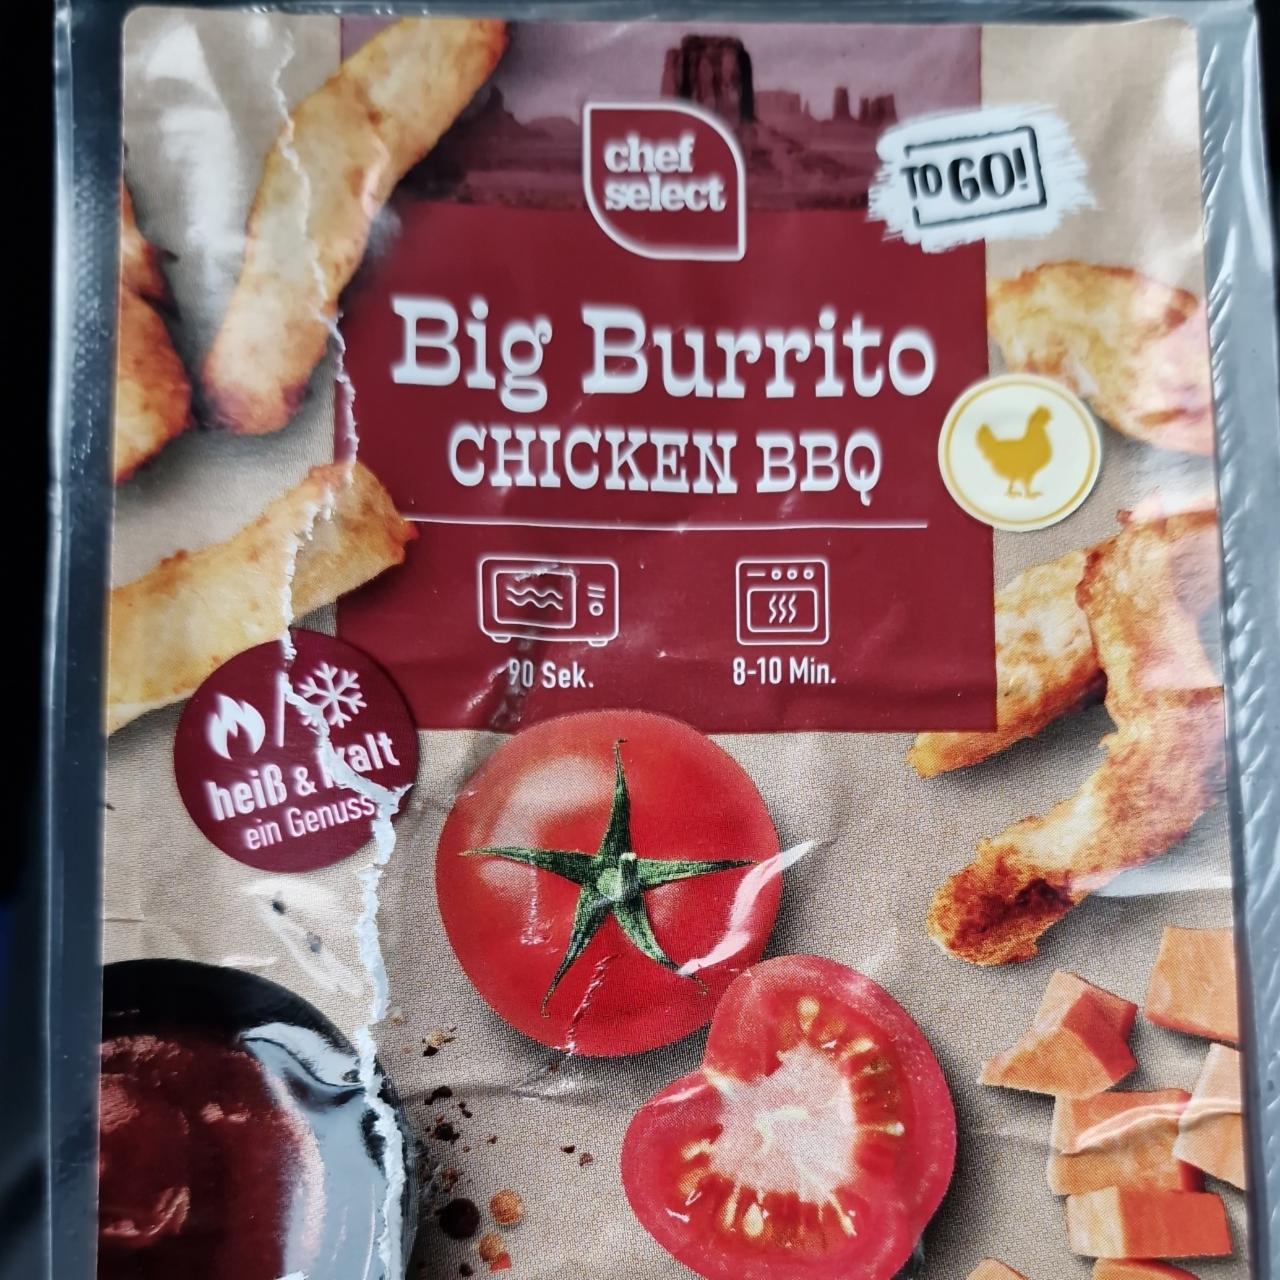 Big Burrito Chicken BBQ Chef Select - kalorie, kJ a nutriční hodnoty